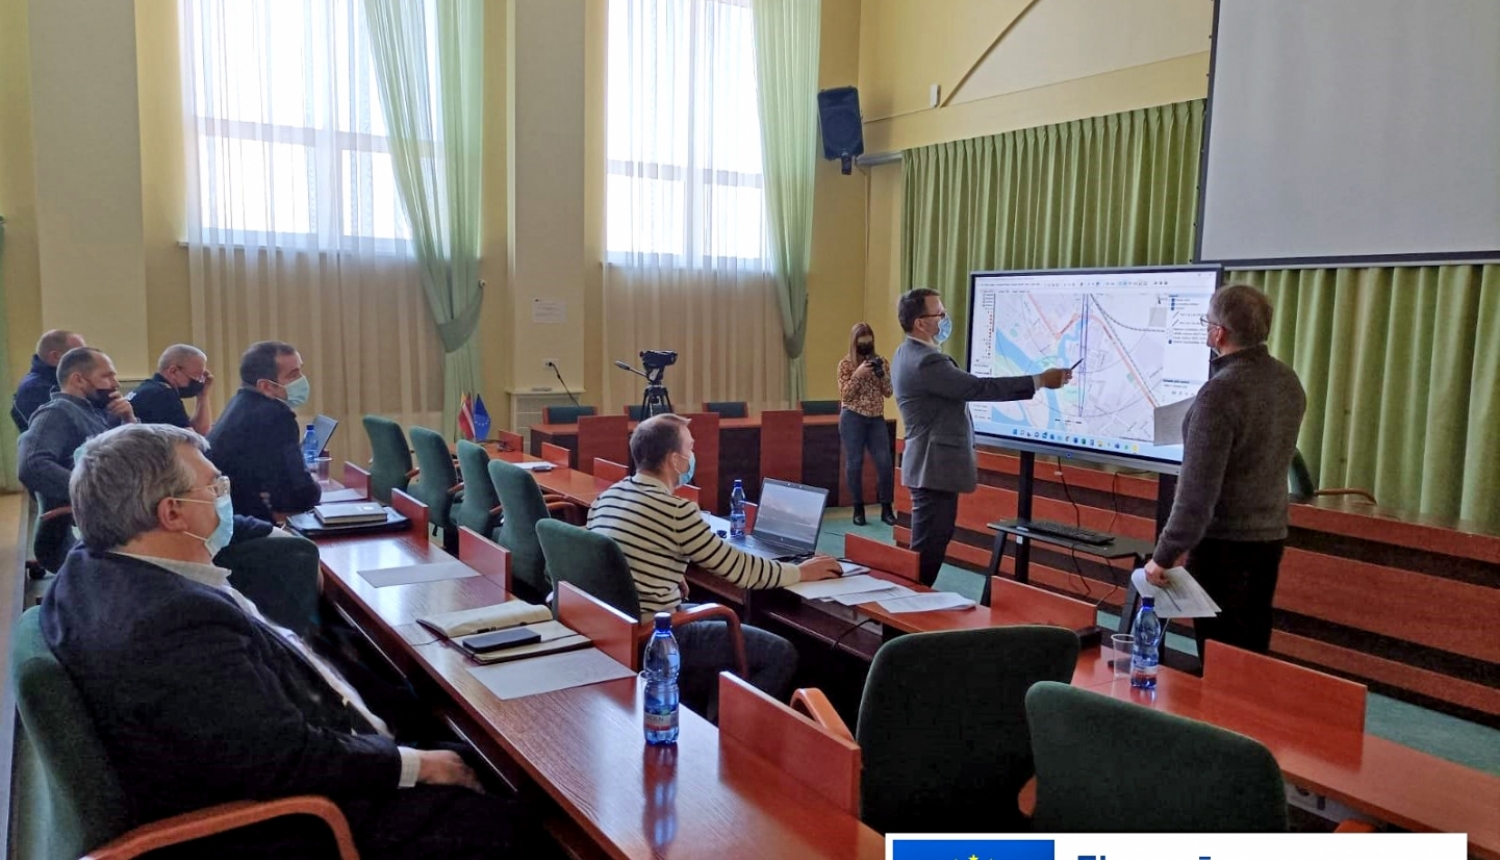 Civilās aizsardzības mācības sēžu zālē Krustpili, tiek rādīta karte uz ekrāna, komisijas locekļi skatās un spriež iespējamās darbības